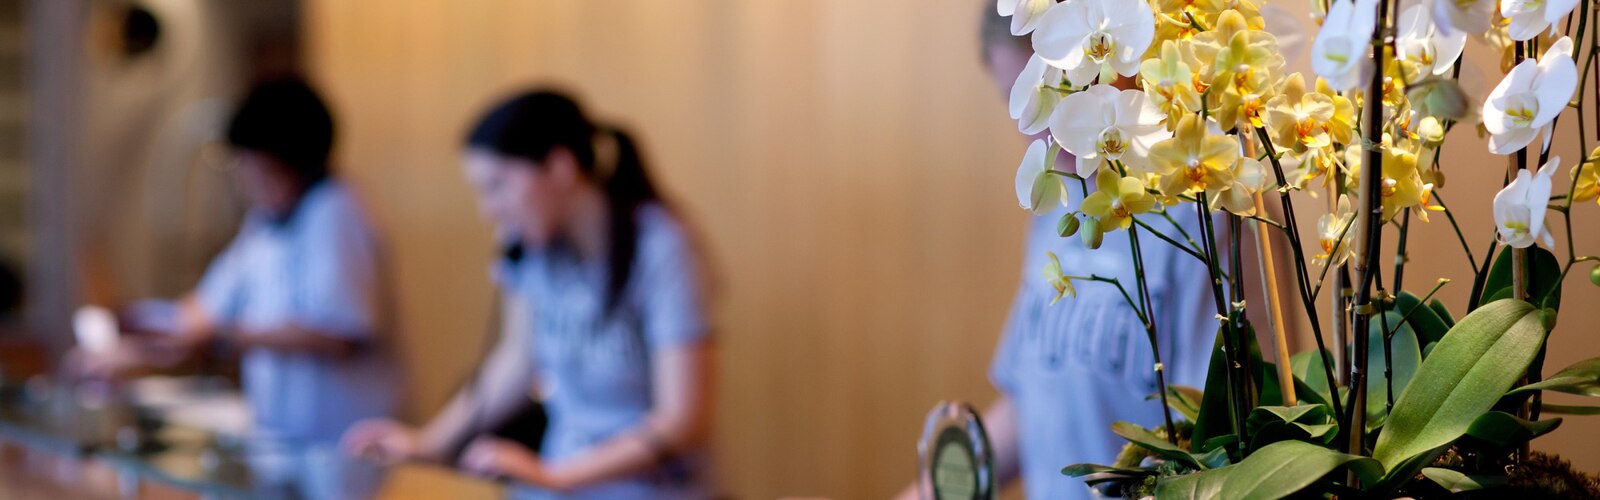 Um vaso com orquídeas em uma mesa de recepção no hotel, três recepcionistas ao fundo